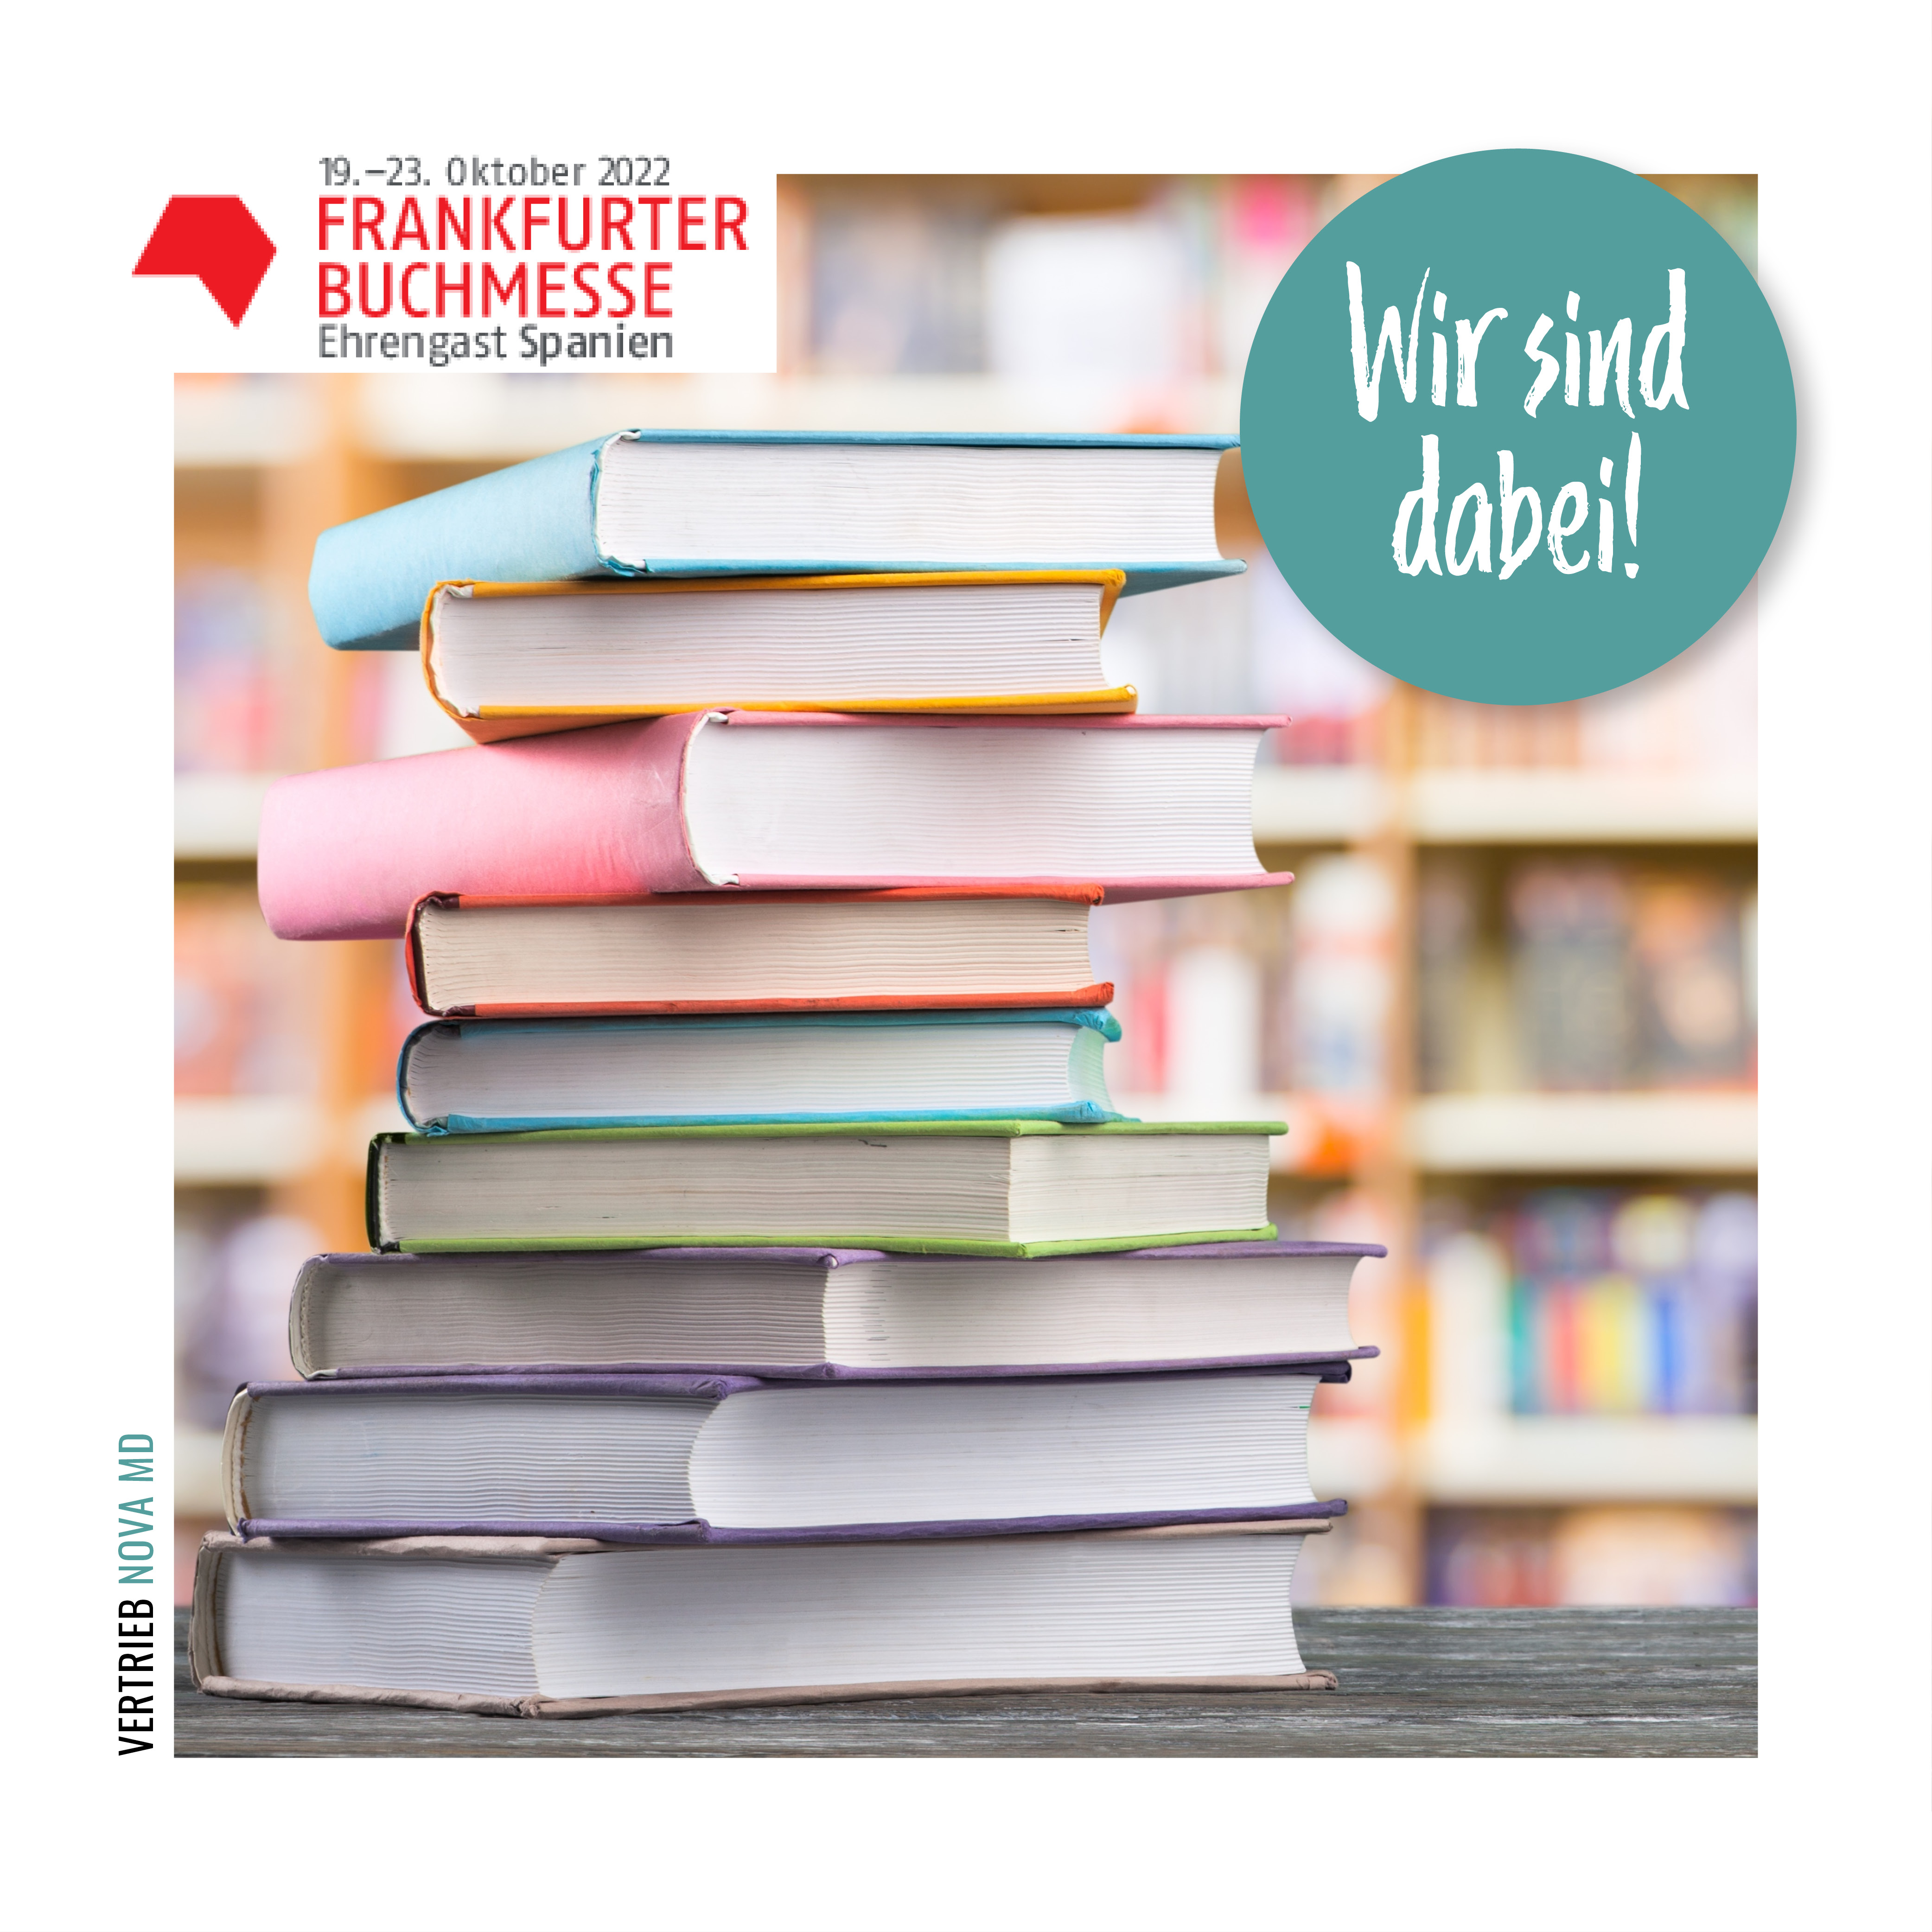 Nova MD ist zu Besuch auf der Frankfurter Buchmesse 2022. Meldet euch bei eurem Ansprechpartner für eine Terminvereinbarung.